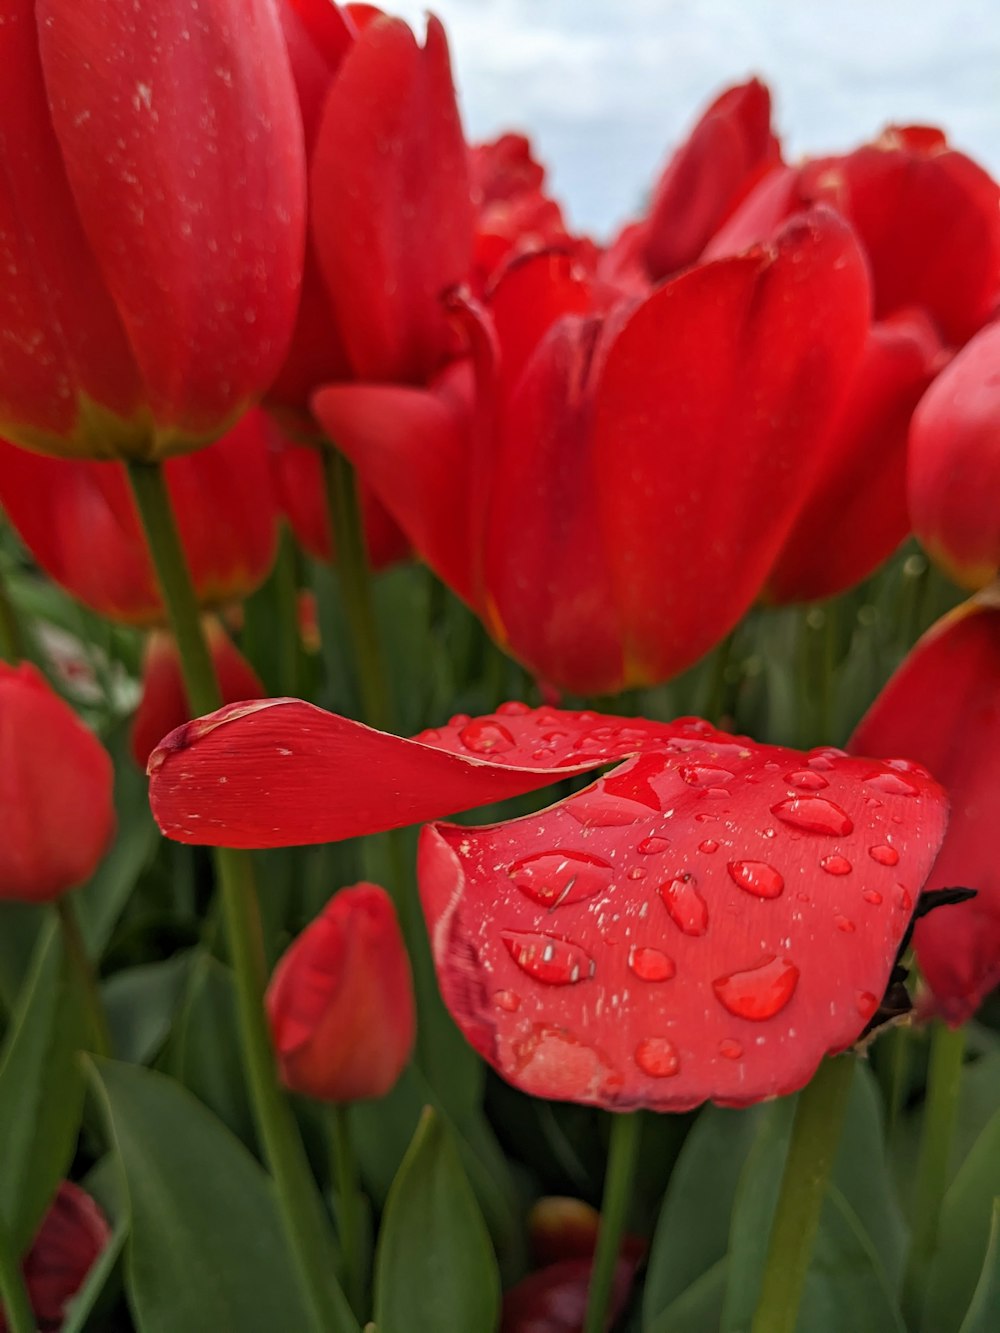 um ramo de flores vermelhas com gotículas de água sobre elas